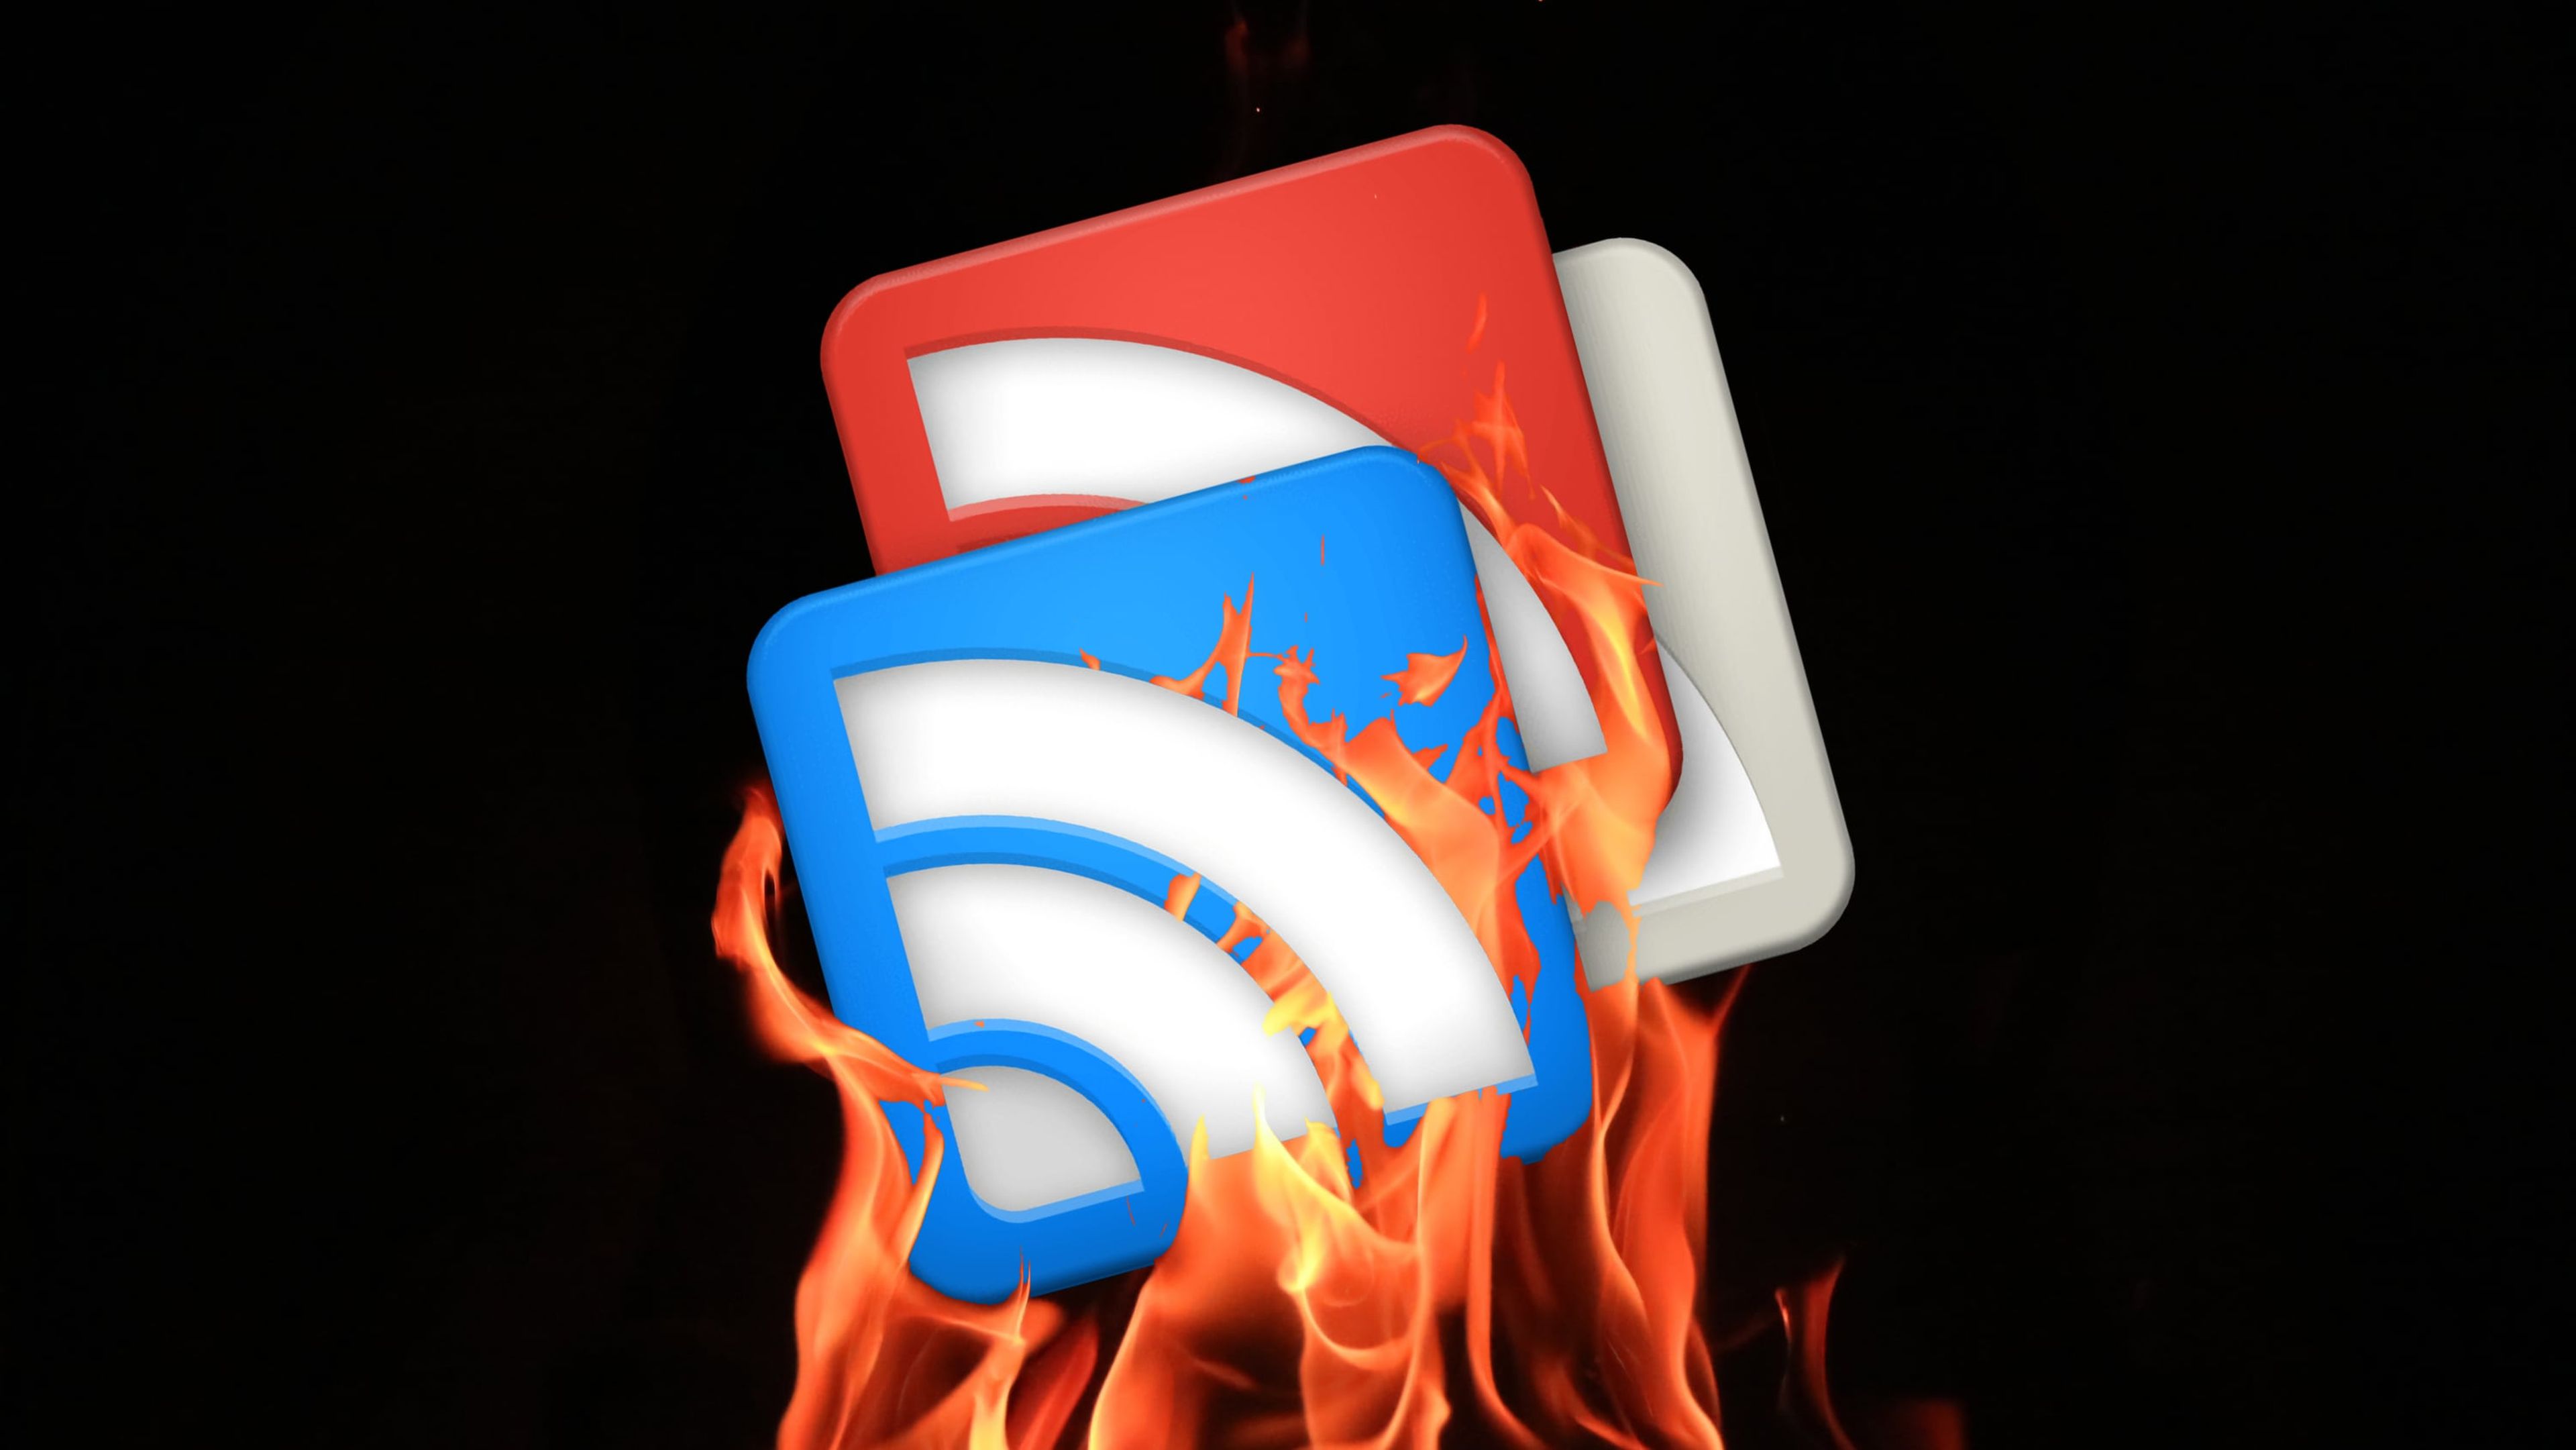 Icono de Google Reader envuelto en llamas